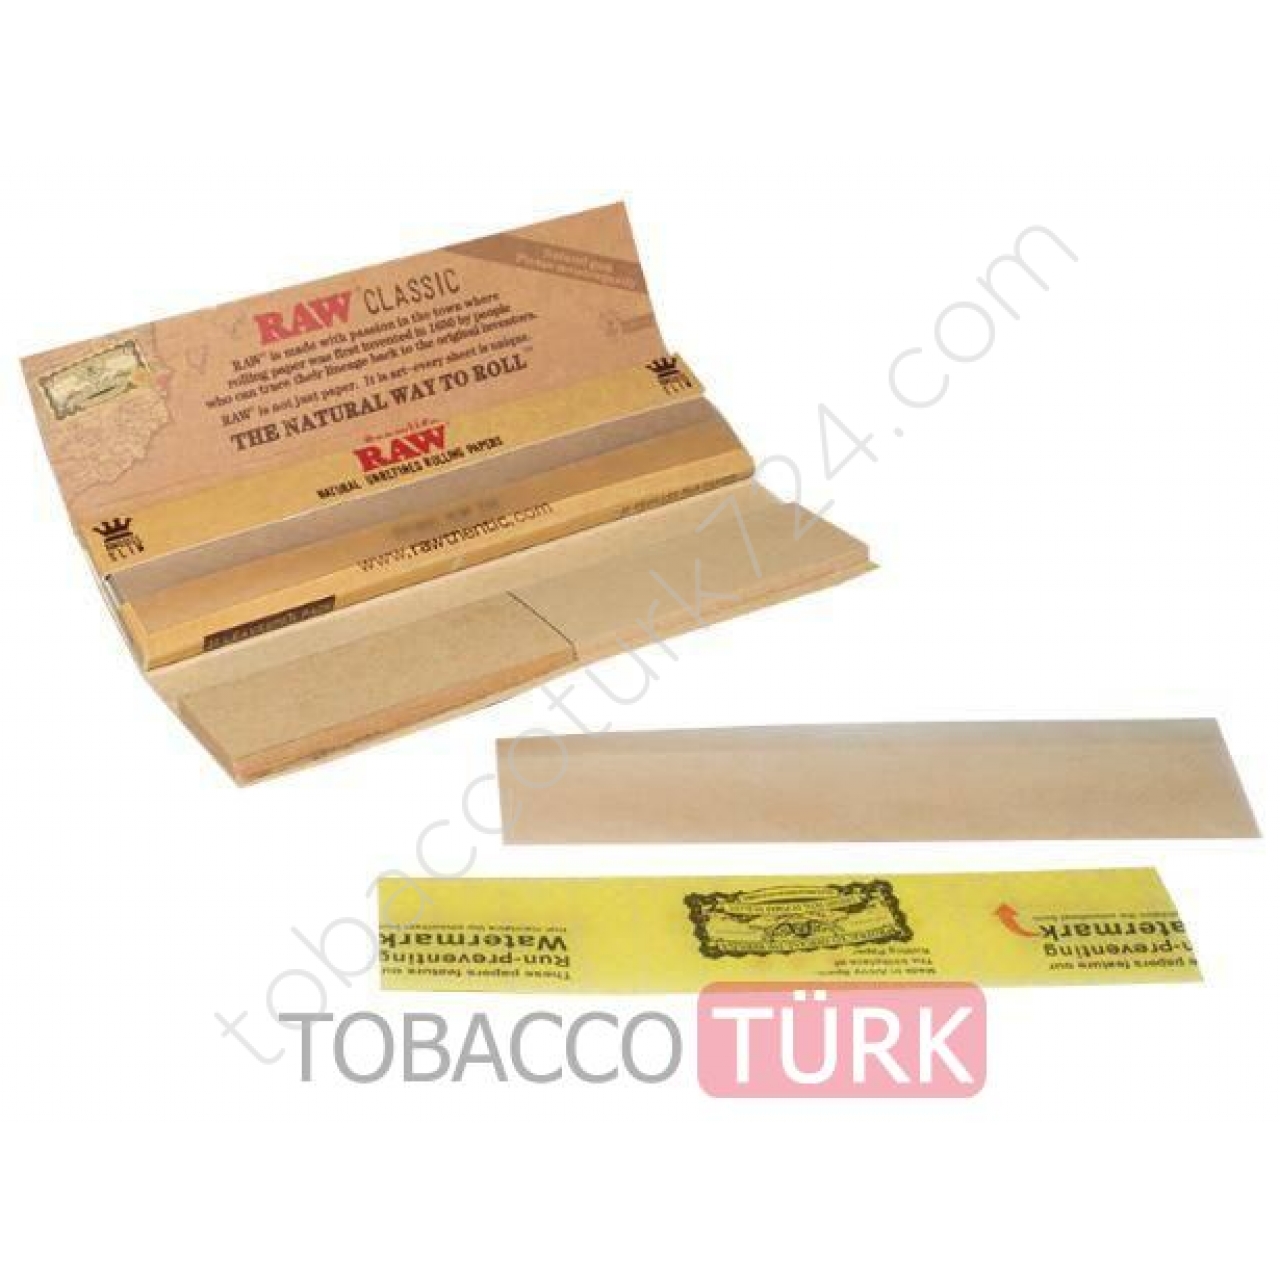 Raw Zıvanalı Tütün Sarma Kağıdı Orjinal Ürün